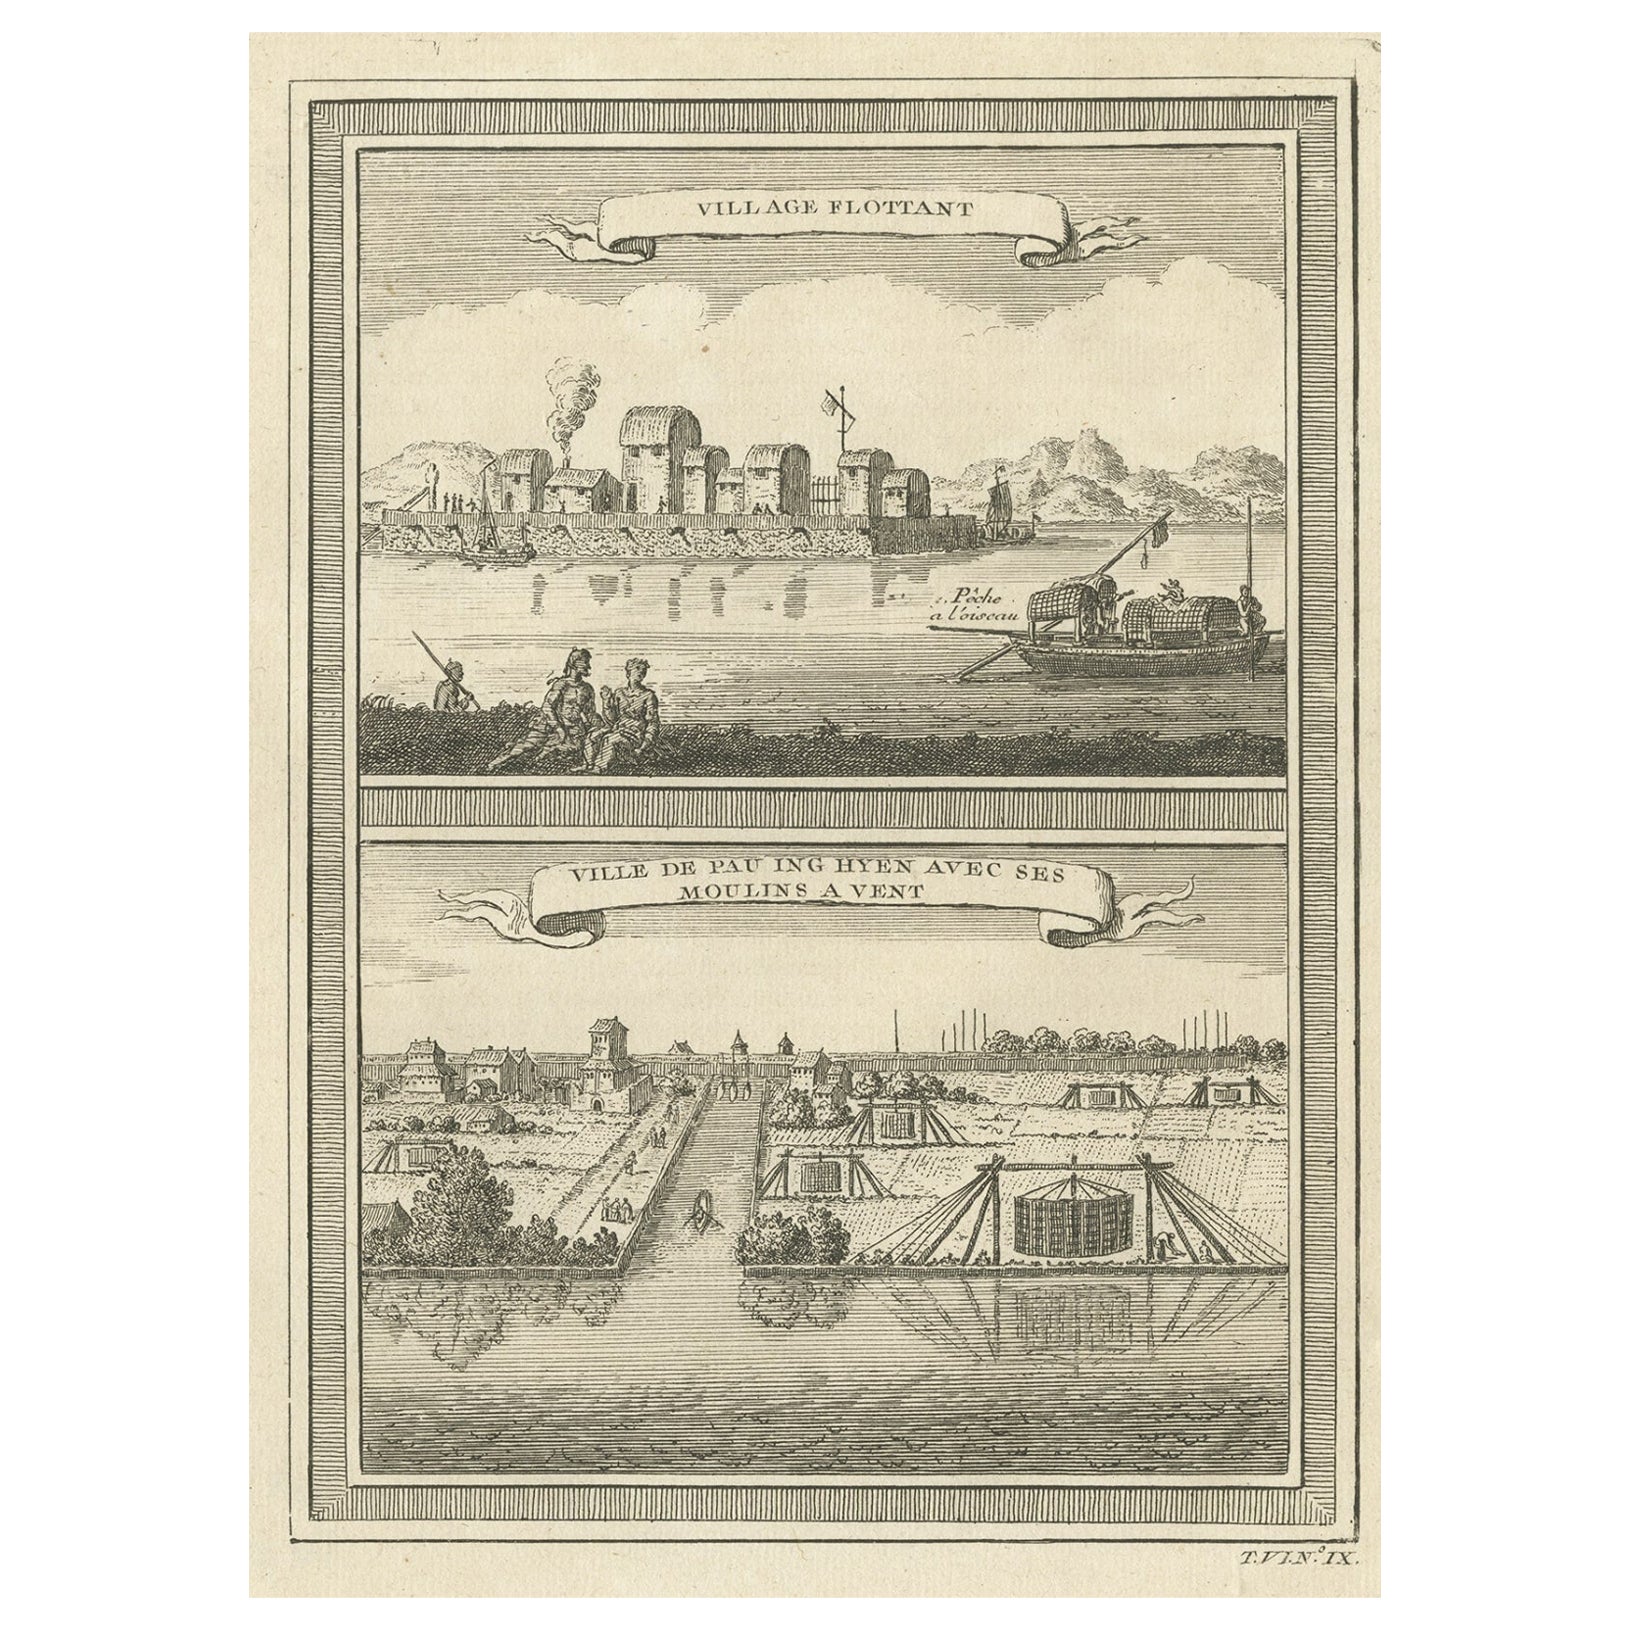 Impression ancienne de deux villages chinois Pau Ing Hyen avec des moulins à vent, Chine, 1748